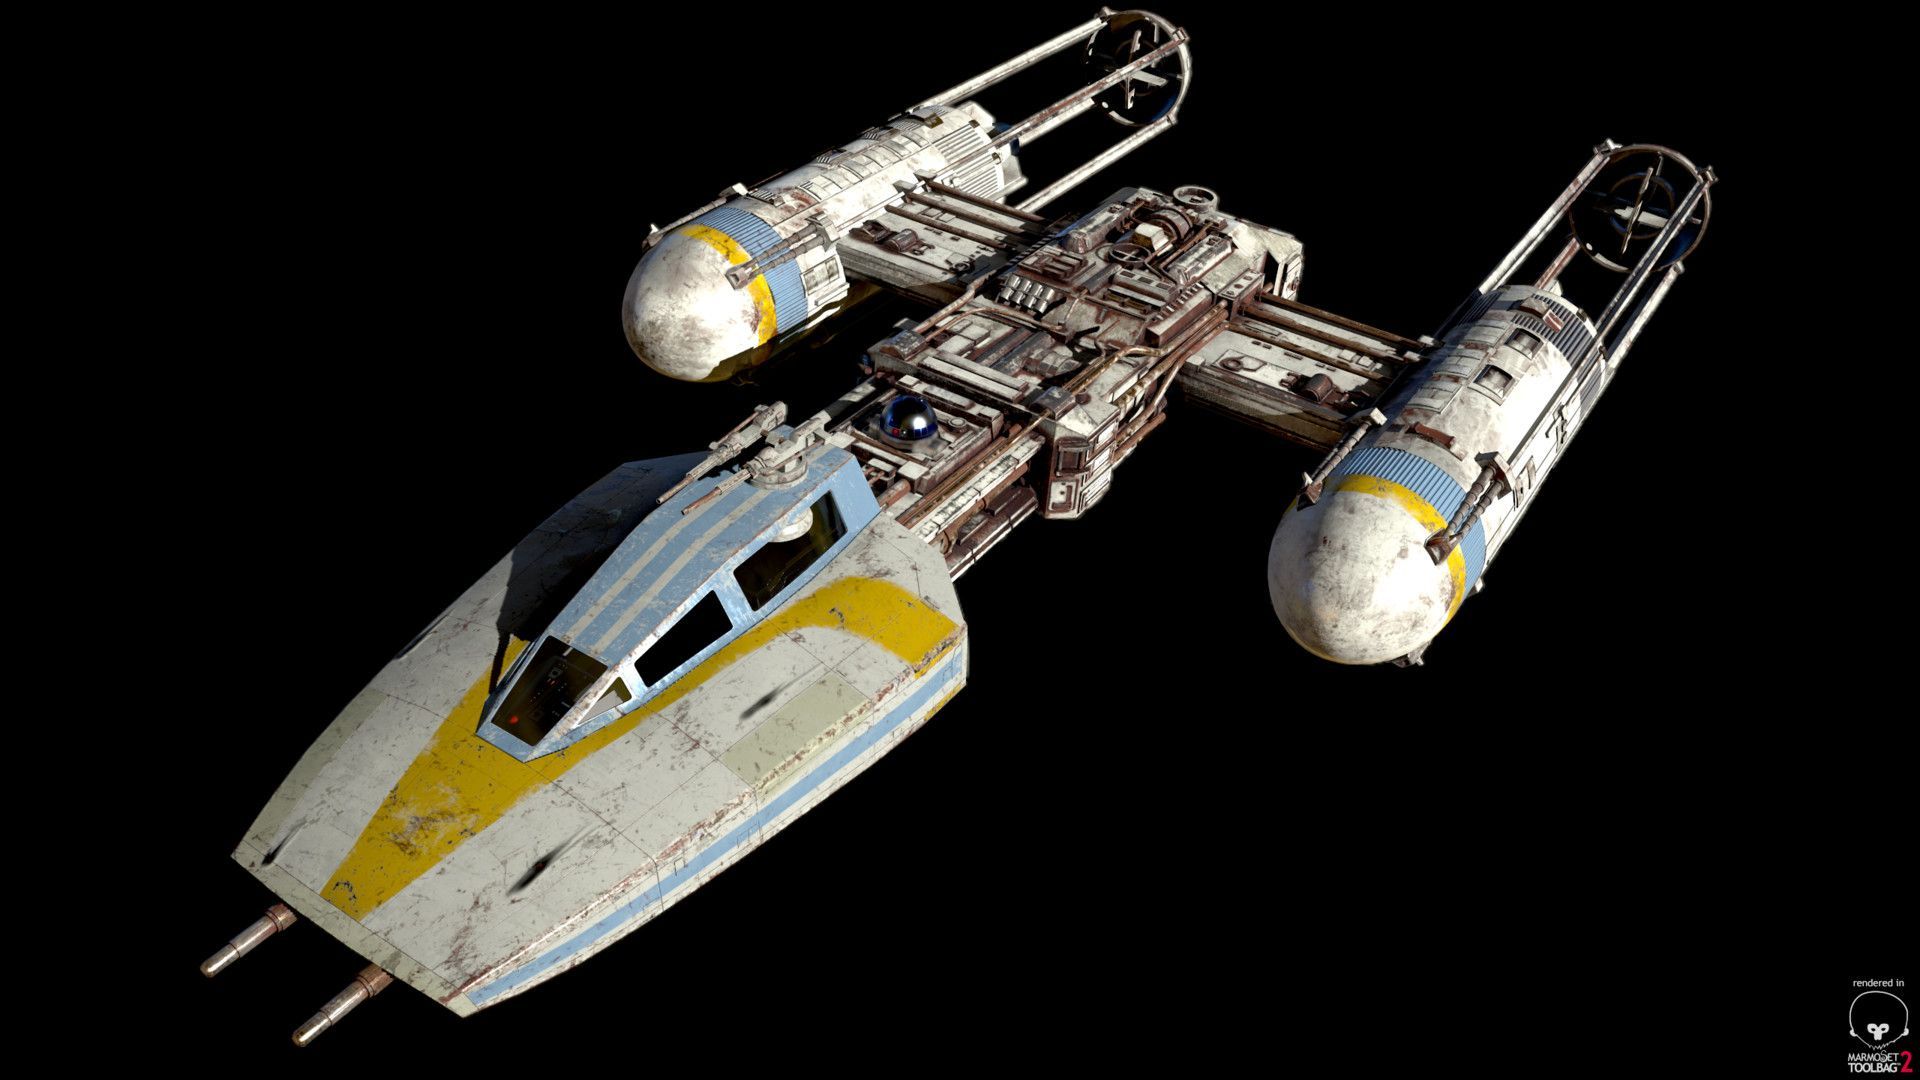 BTL A4 Y Wing Starfighter, Bruno Parillo. Star Wars Spaceships, Star Wars Vehicles, Star Wars Ships